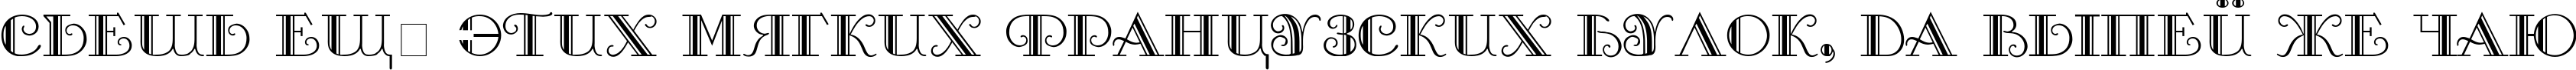 Пример написания шрифтом Sanasoft Galleria.kz текста на русском